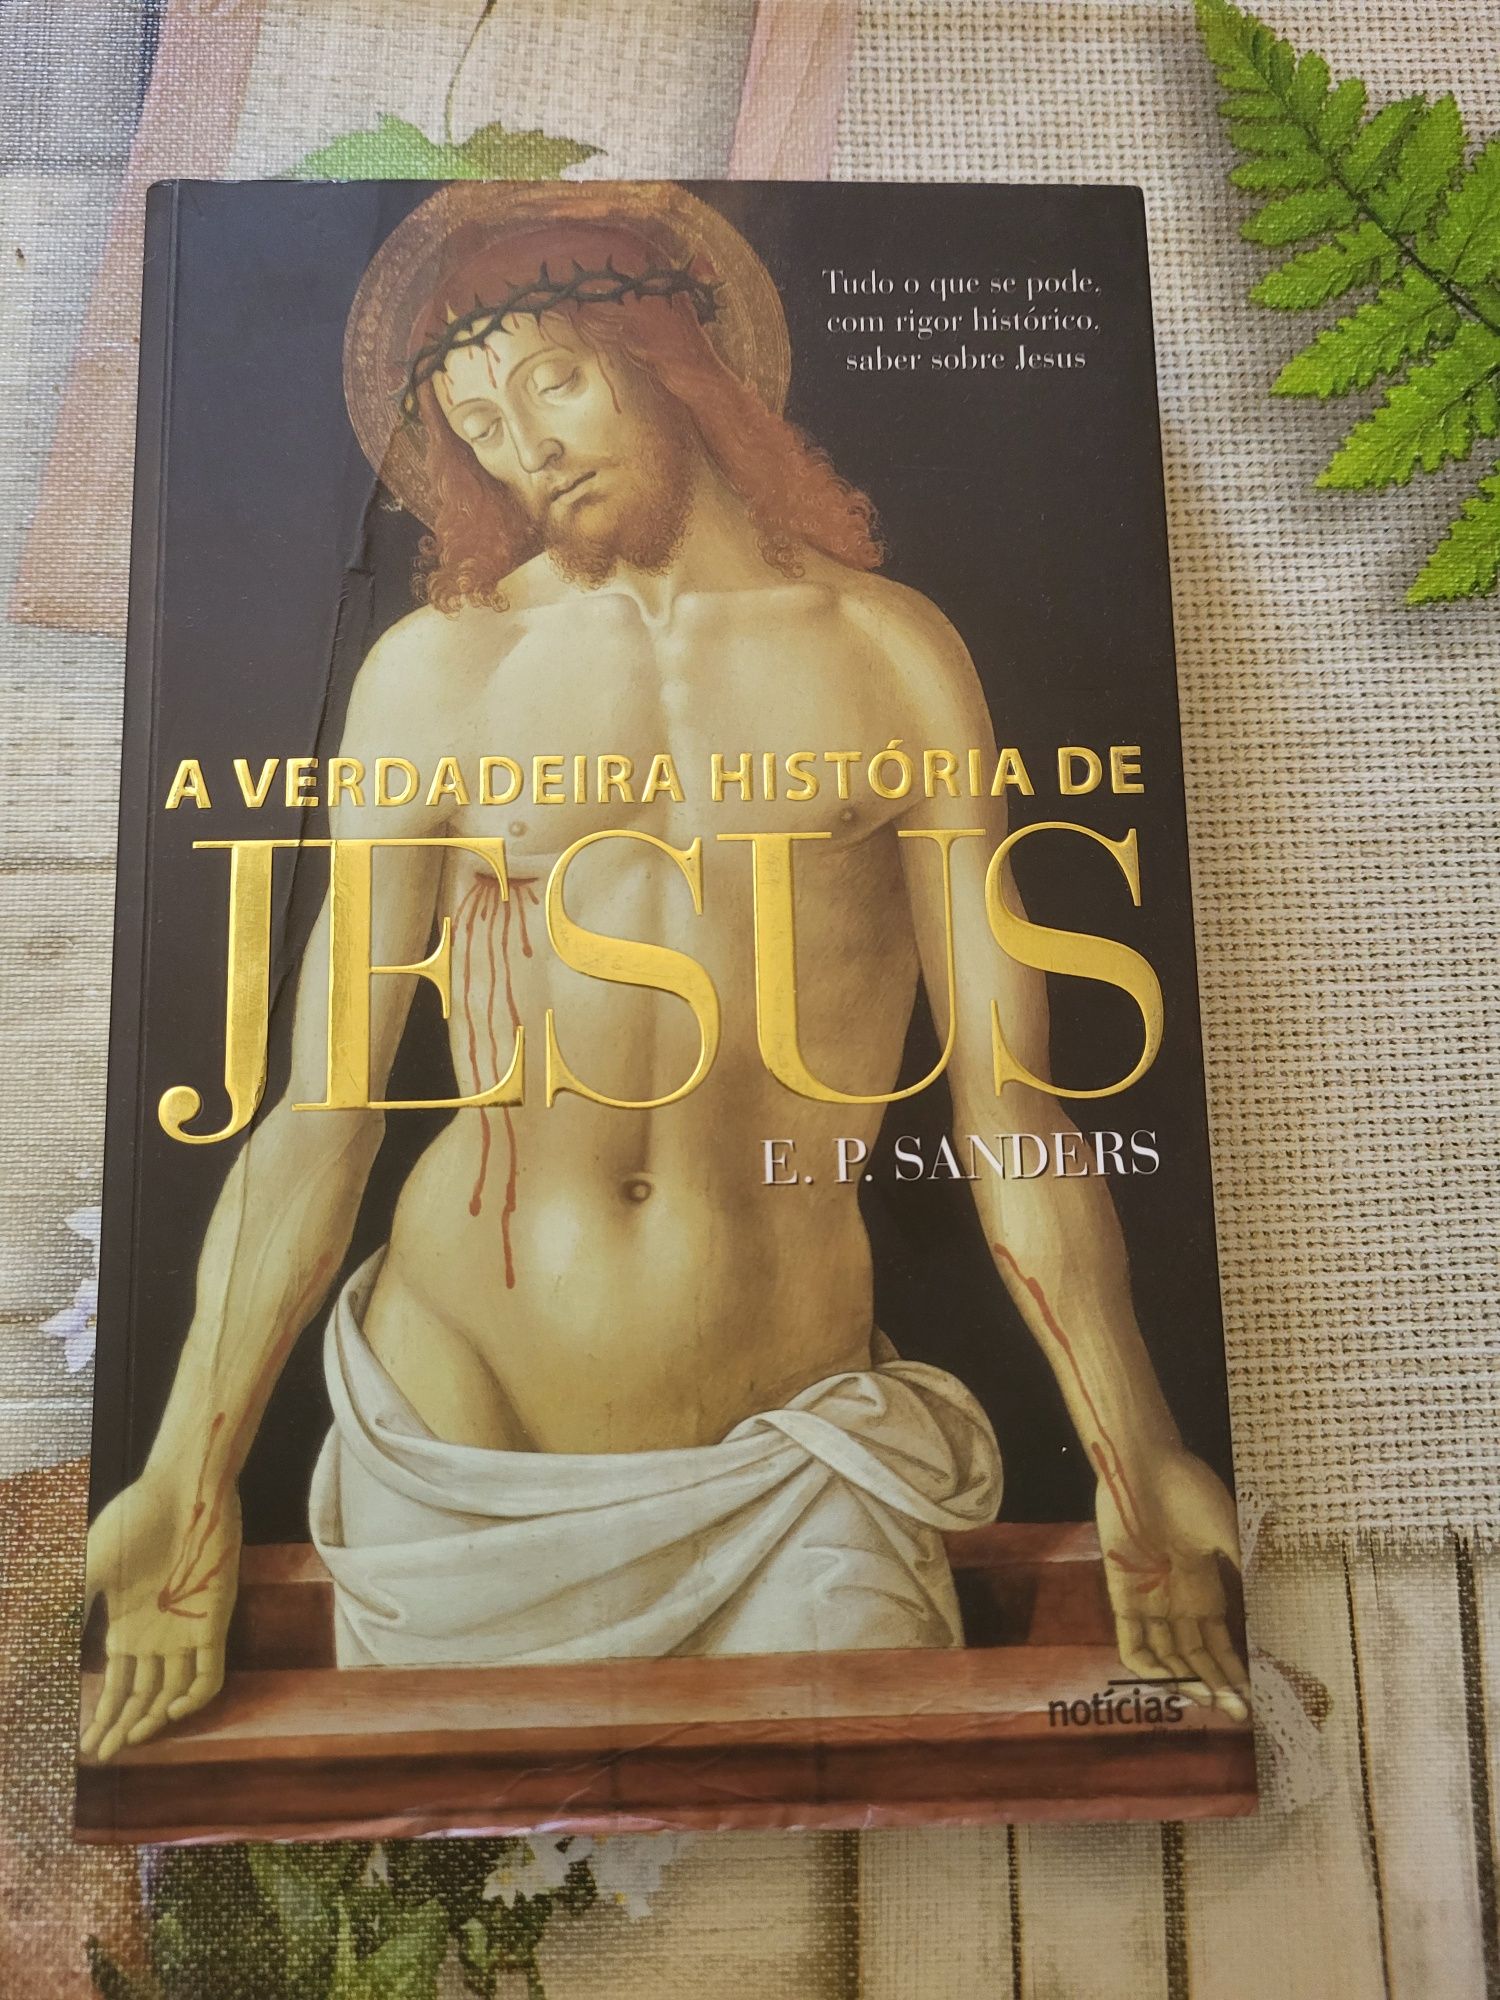 Livro "A verdadeira história de Jesus Cristo"